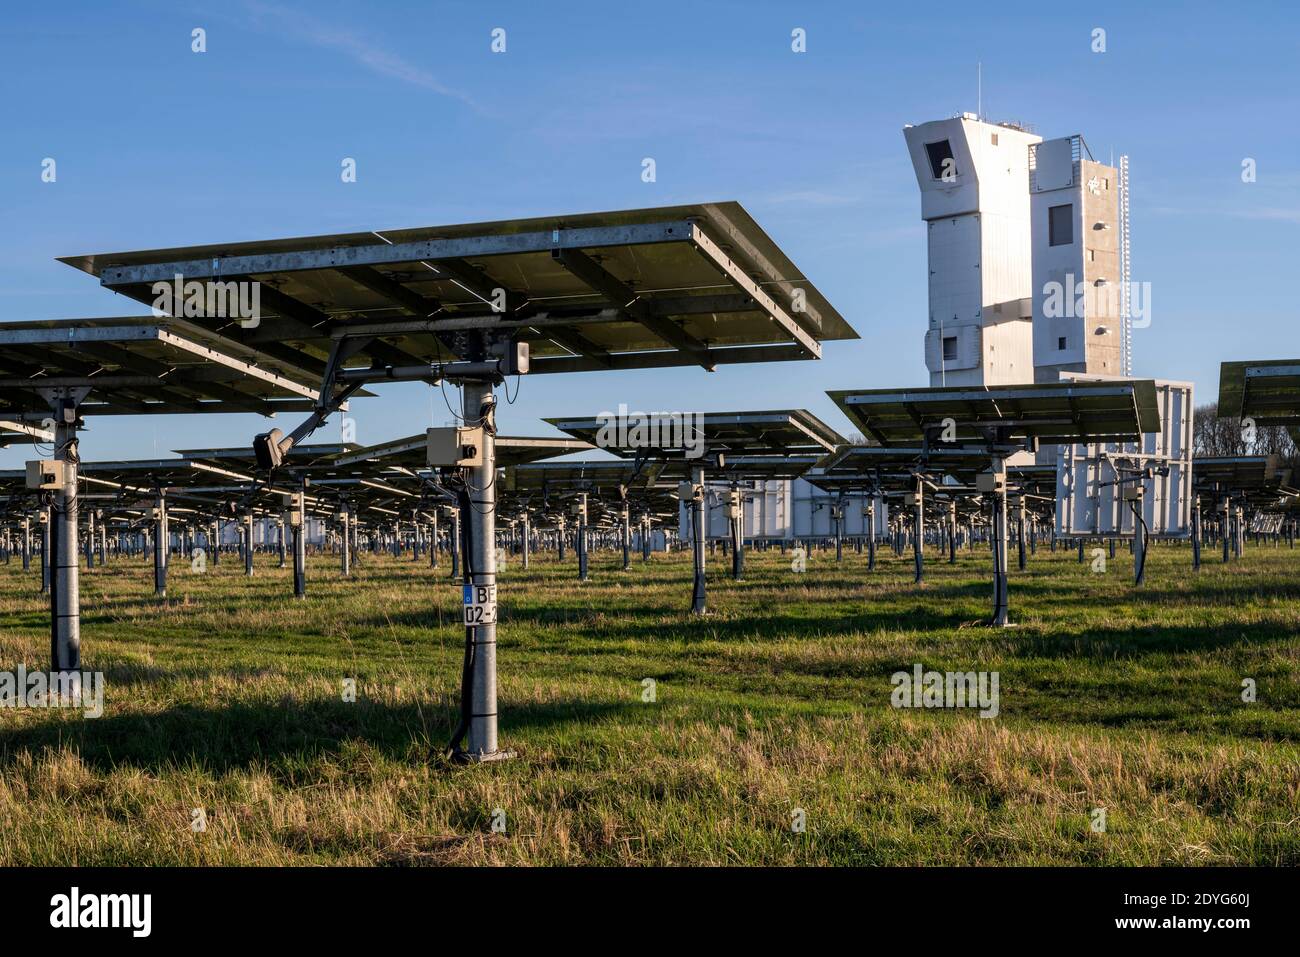 Jülich, Solarturmkraftwerk, solarthermisches Versuchskraftwerk Stock Photo